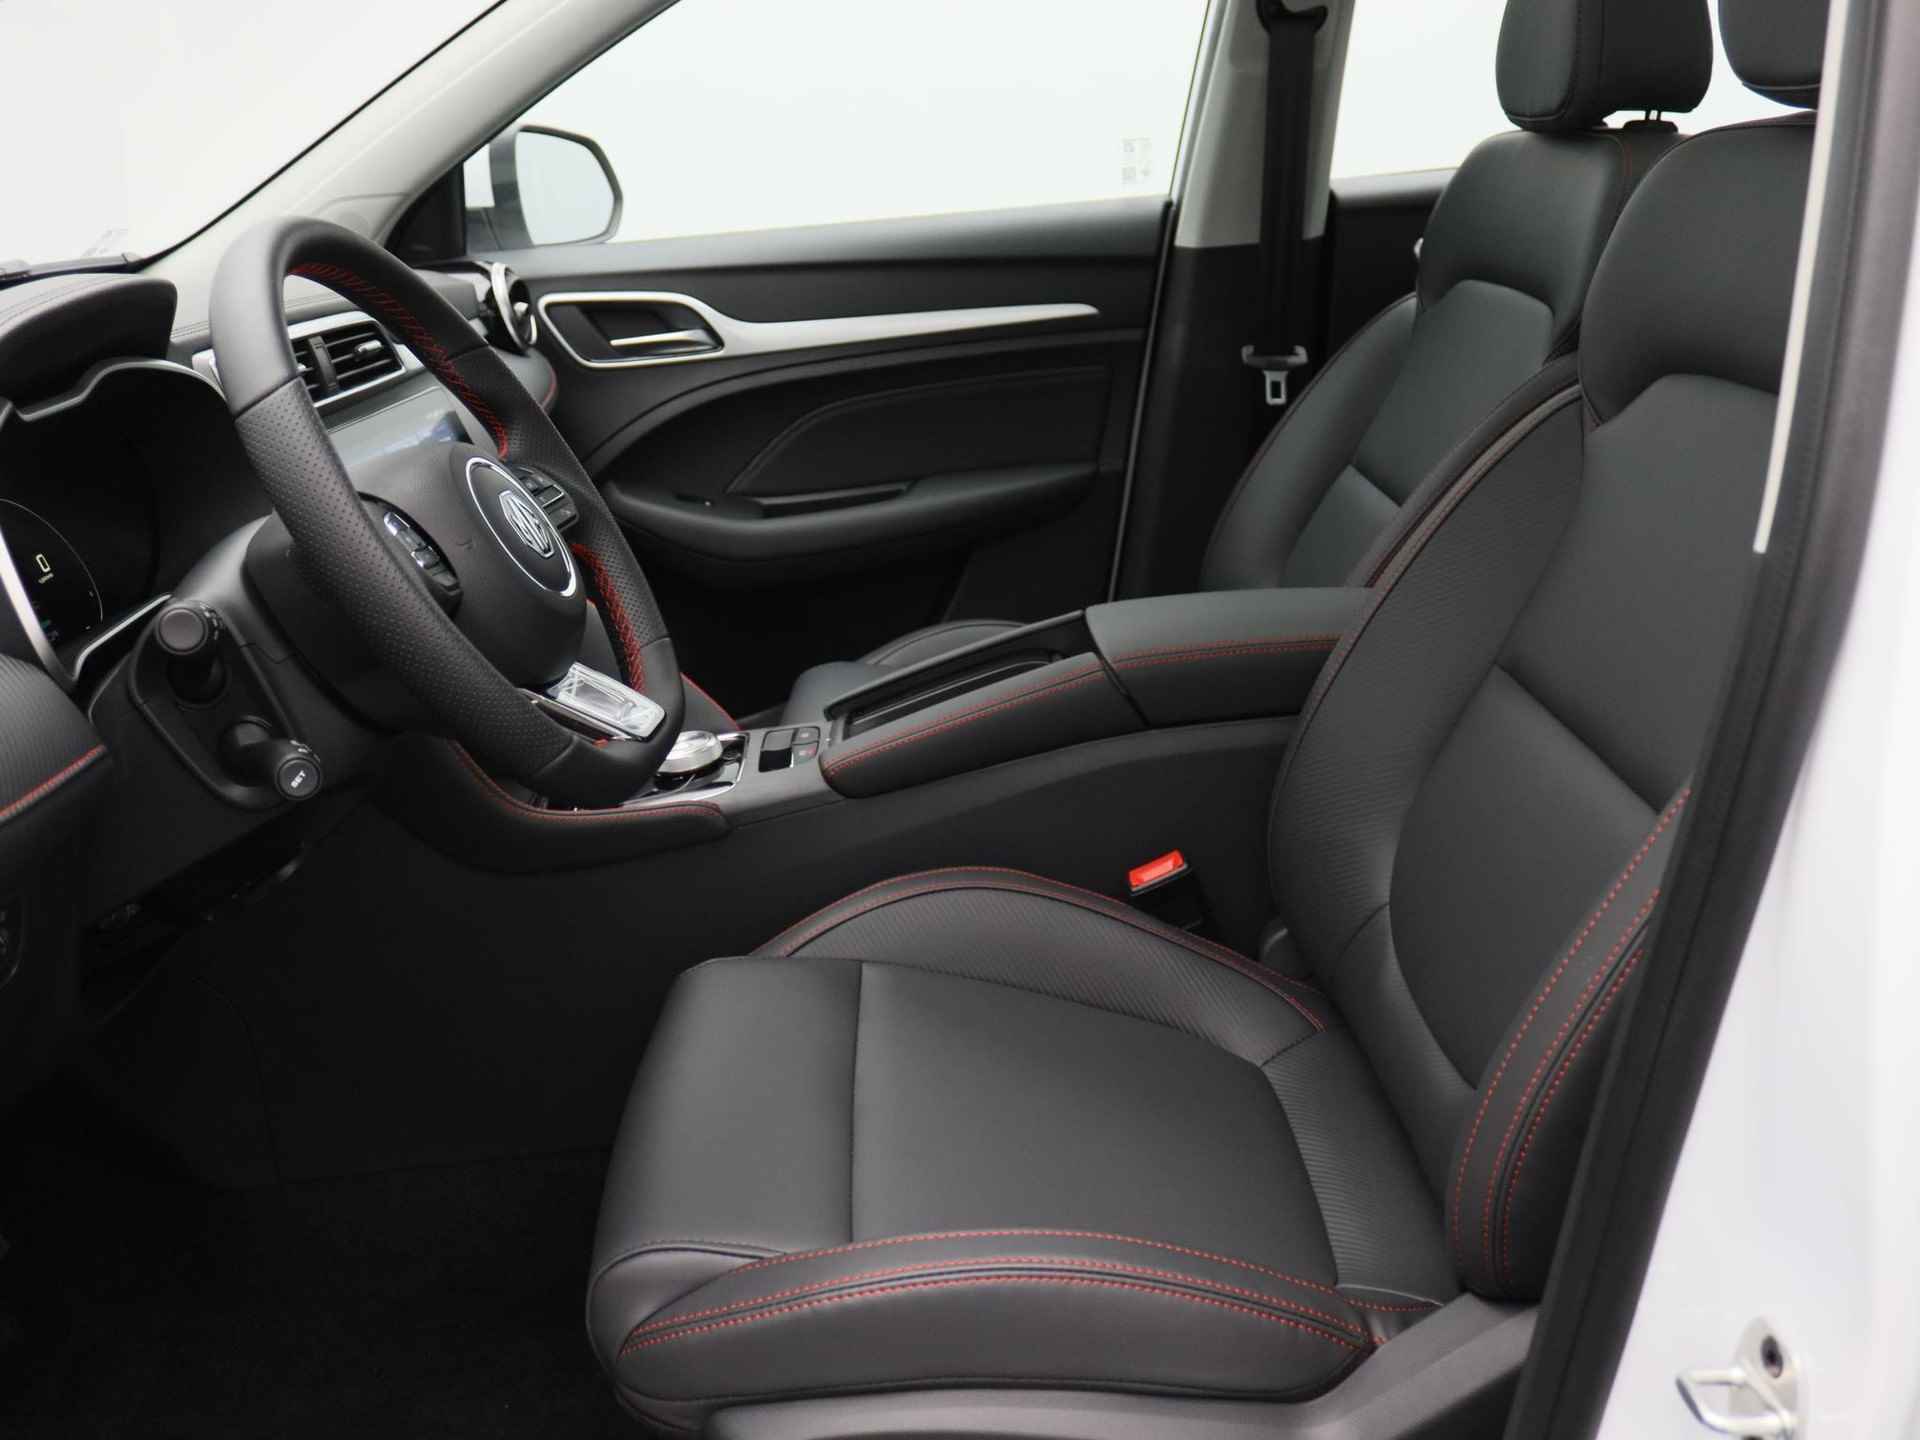 MG ZS EV Standard Range Luxury | 320 km WLTP | Navigatie | Panorama dak | 7 jaar 150.000 km garantie | Nu €2500,- Upgrade Actie Voordeel! | Wordt in alle kleuren verwacht! - 13/19